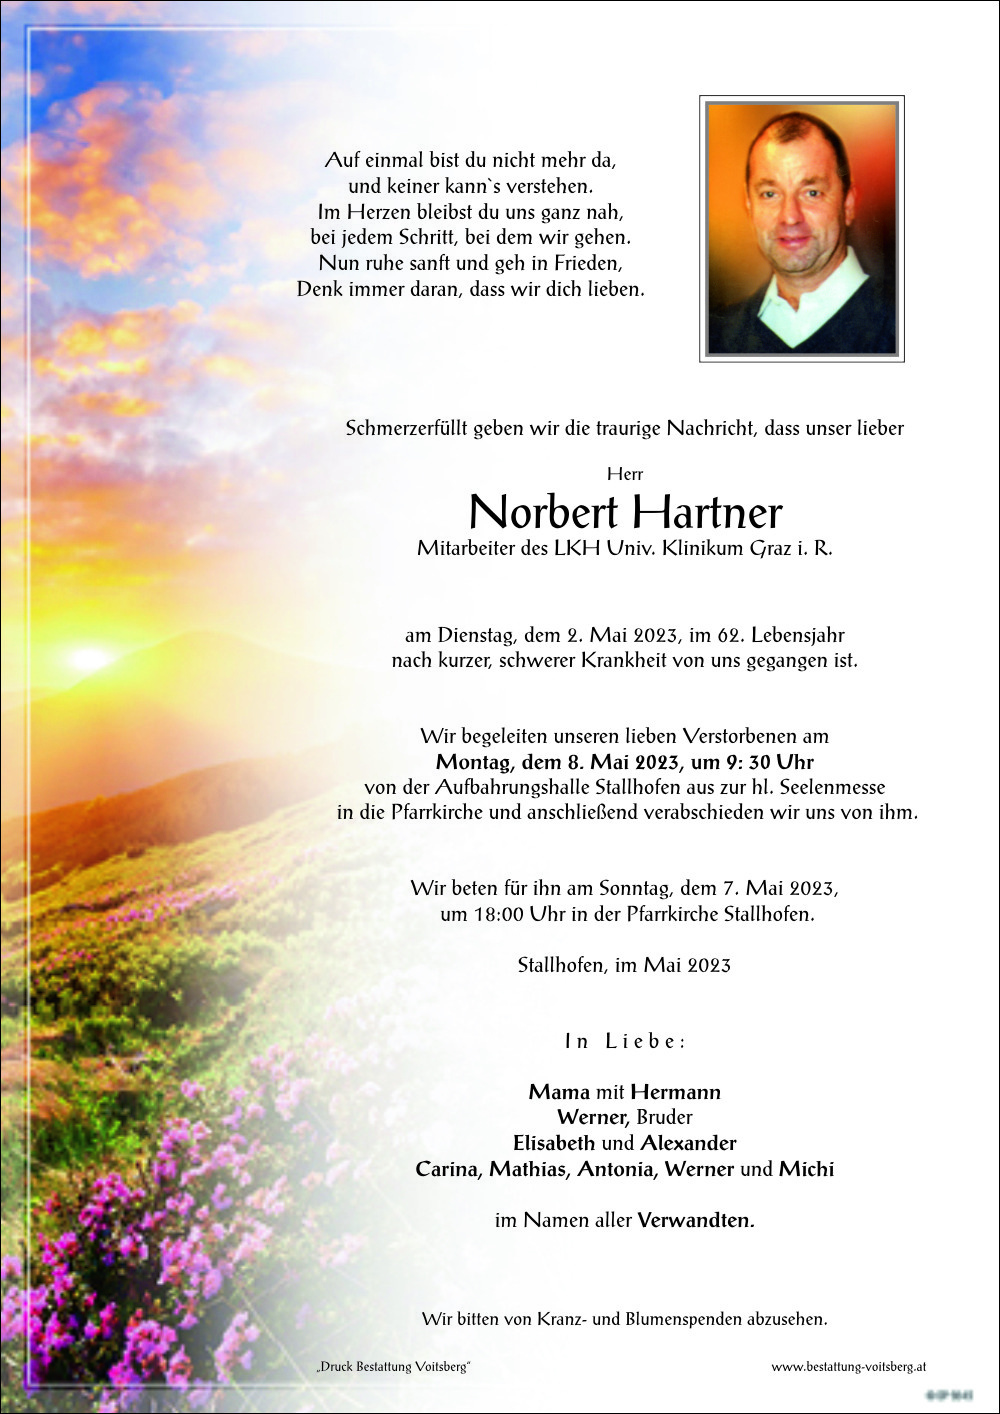 Norbert Hartner